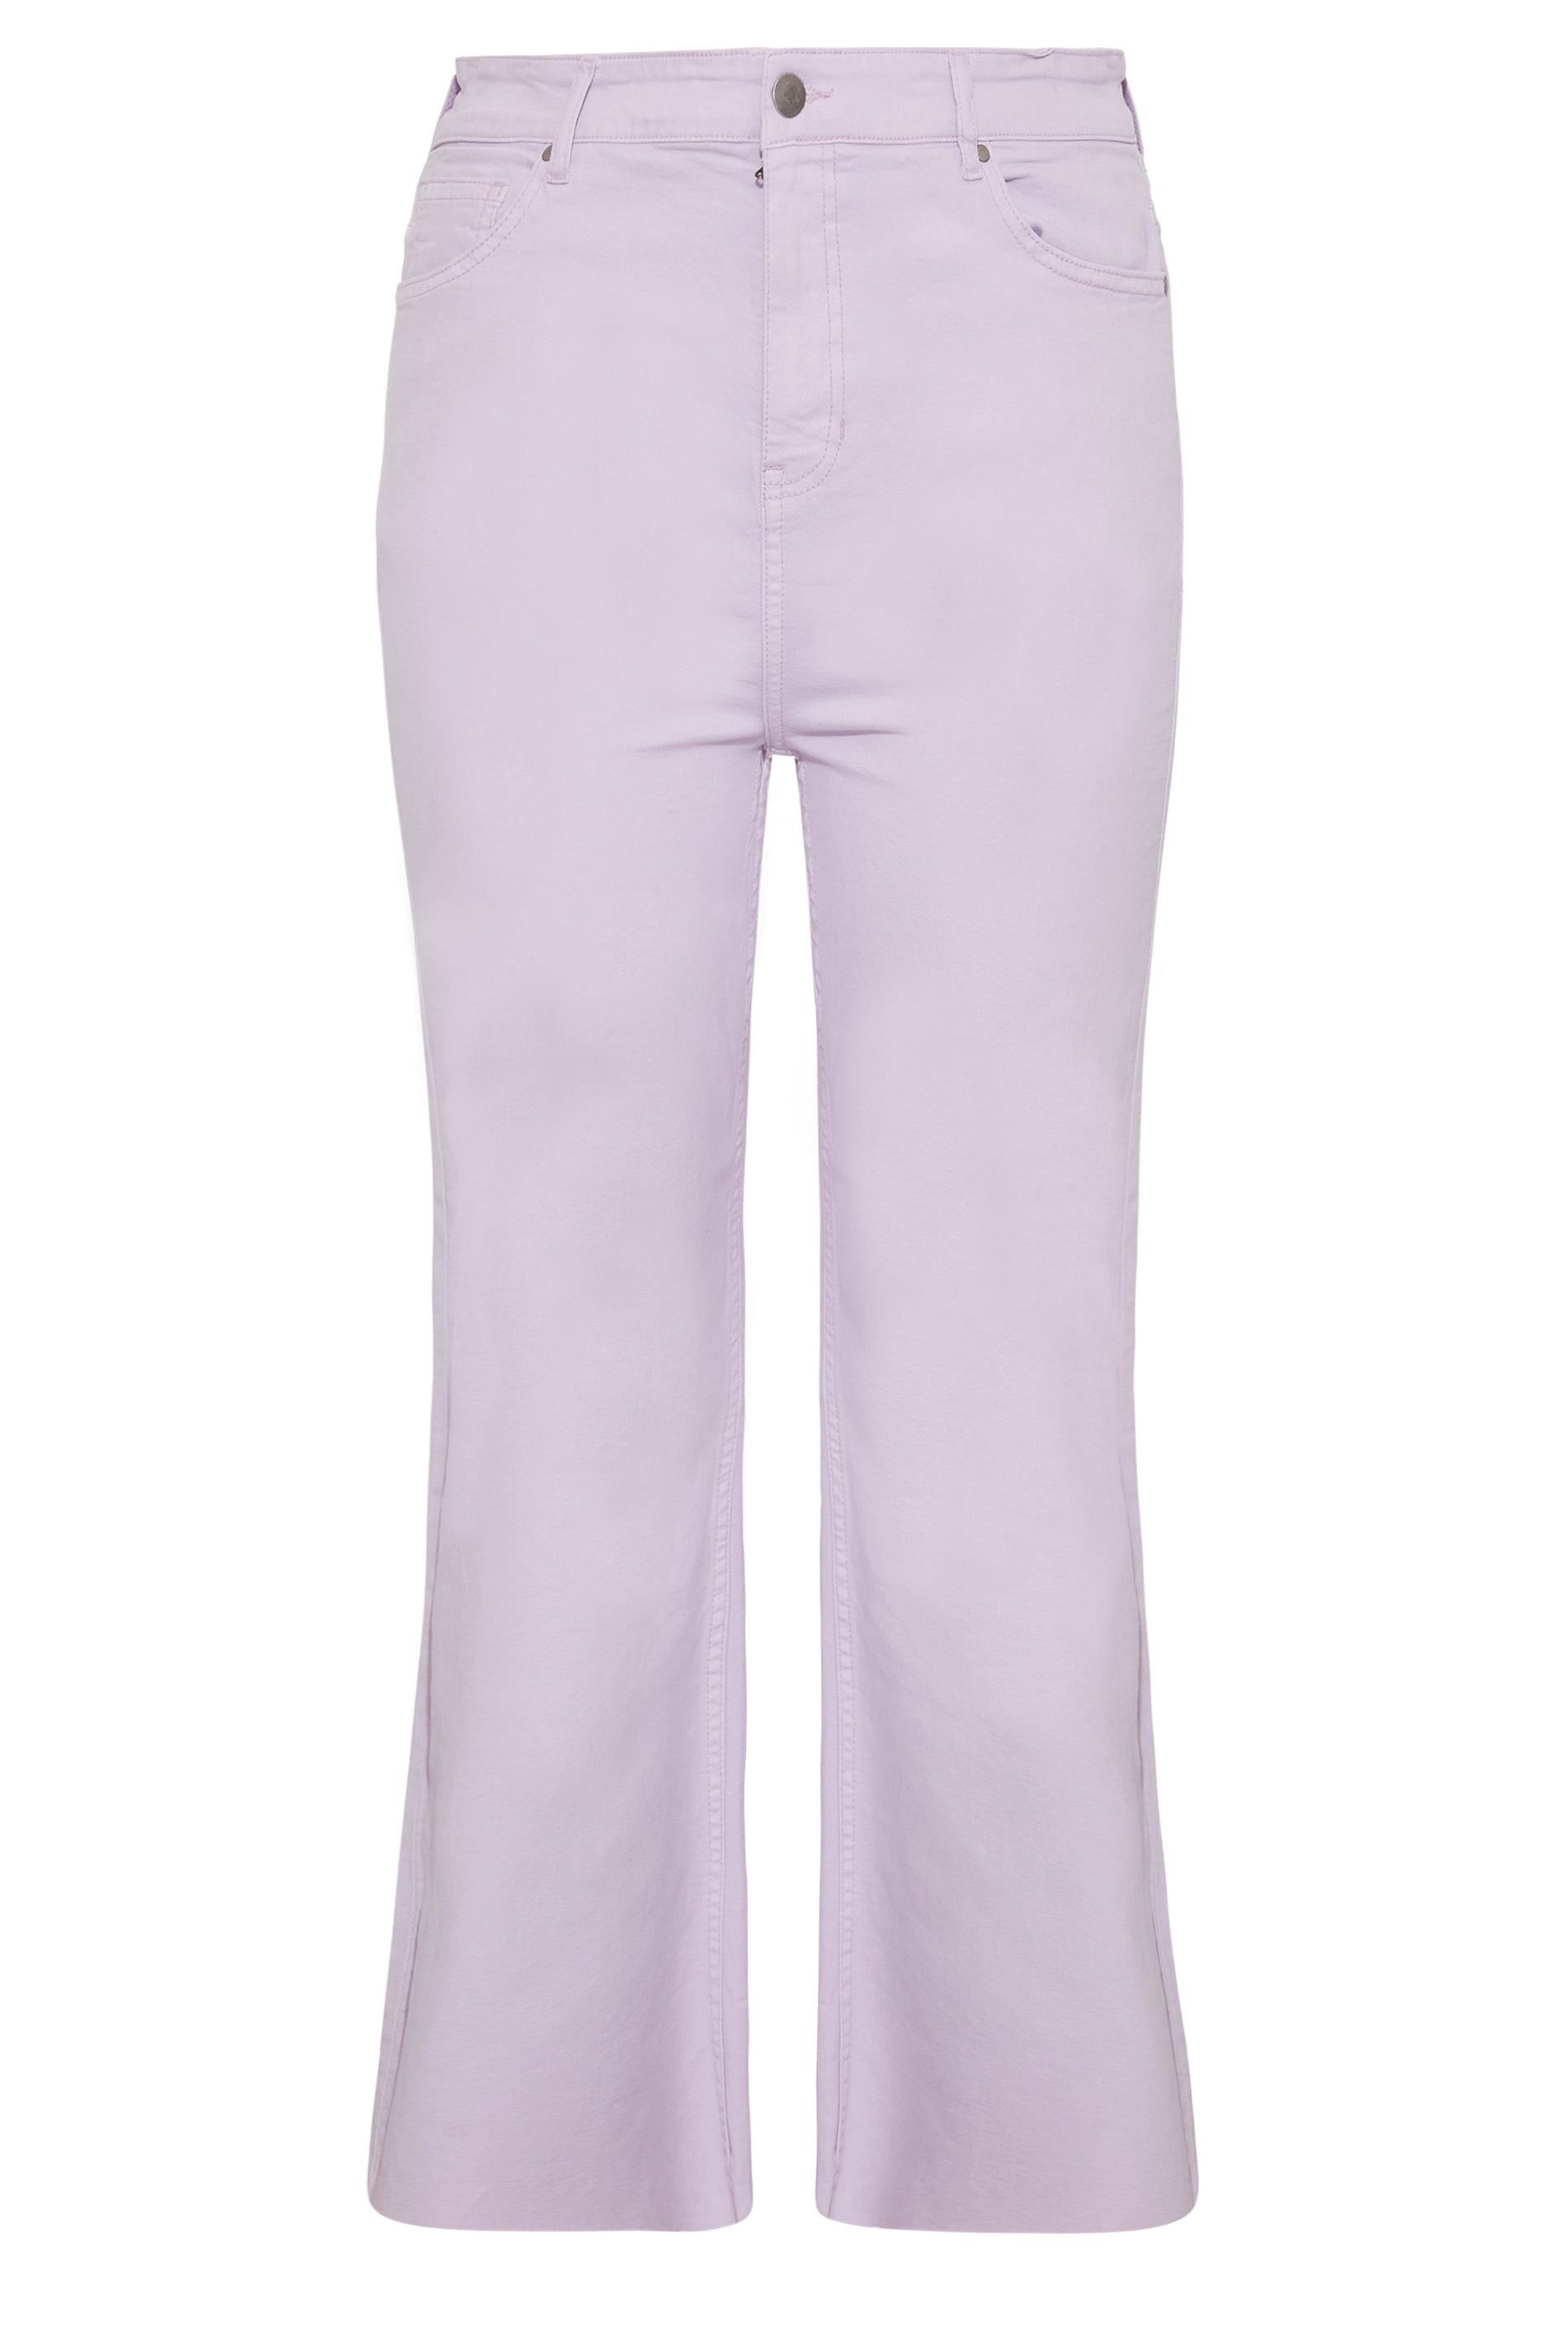 Pantalones entallados de pierna ancha lila